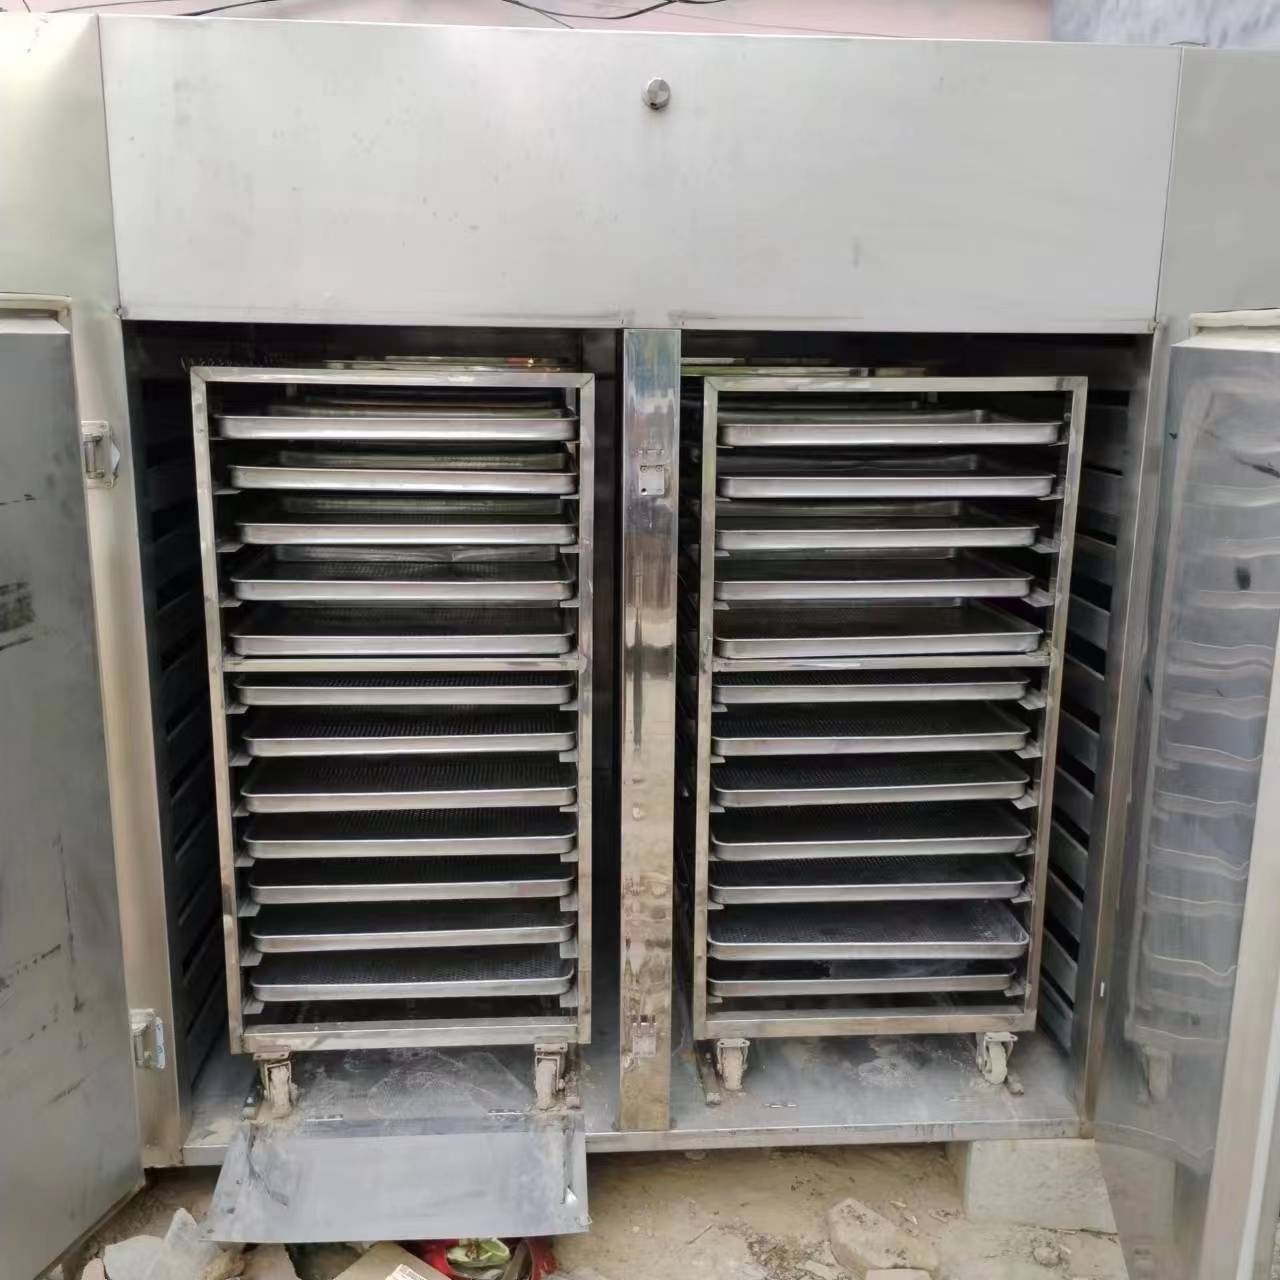 兴畅出售烘箱 二手烘箱 热风循环烘箱 电加热烘箱 不锈钢烘箱 2门4车烘箱 各种型号烘箱 FC-98